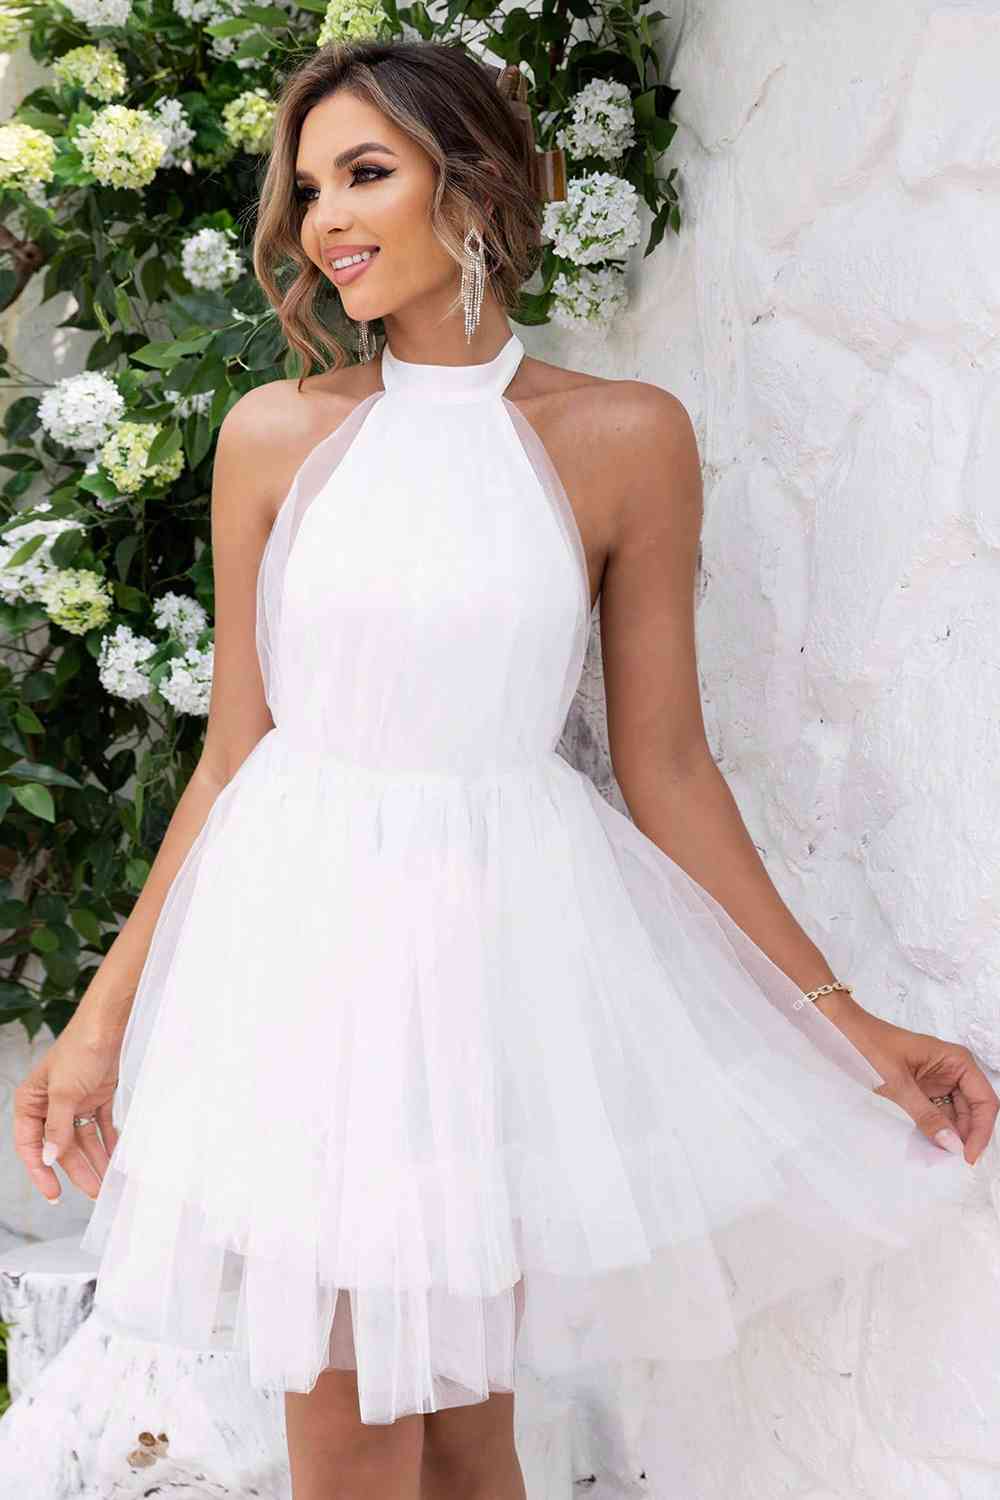 Halter Neck Backless Mesh Dress - White / XS - All Dresses - Dresses - 9 - 2024